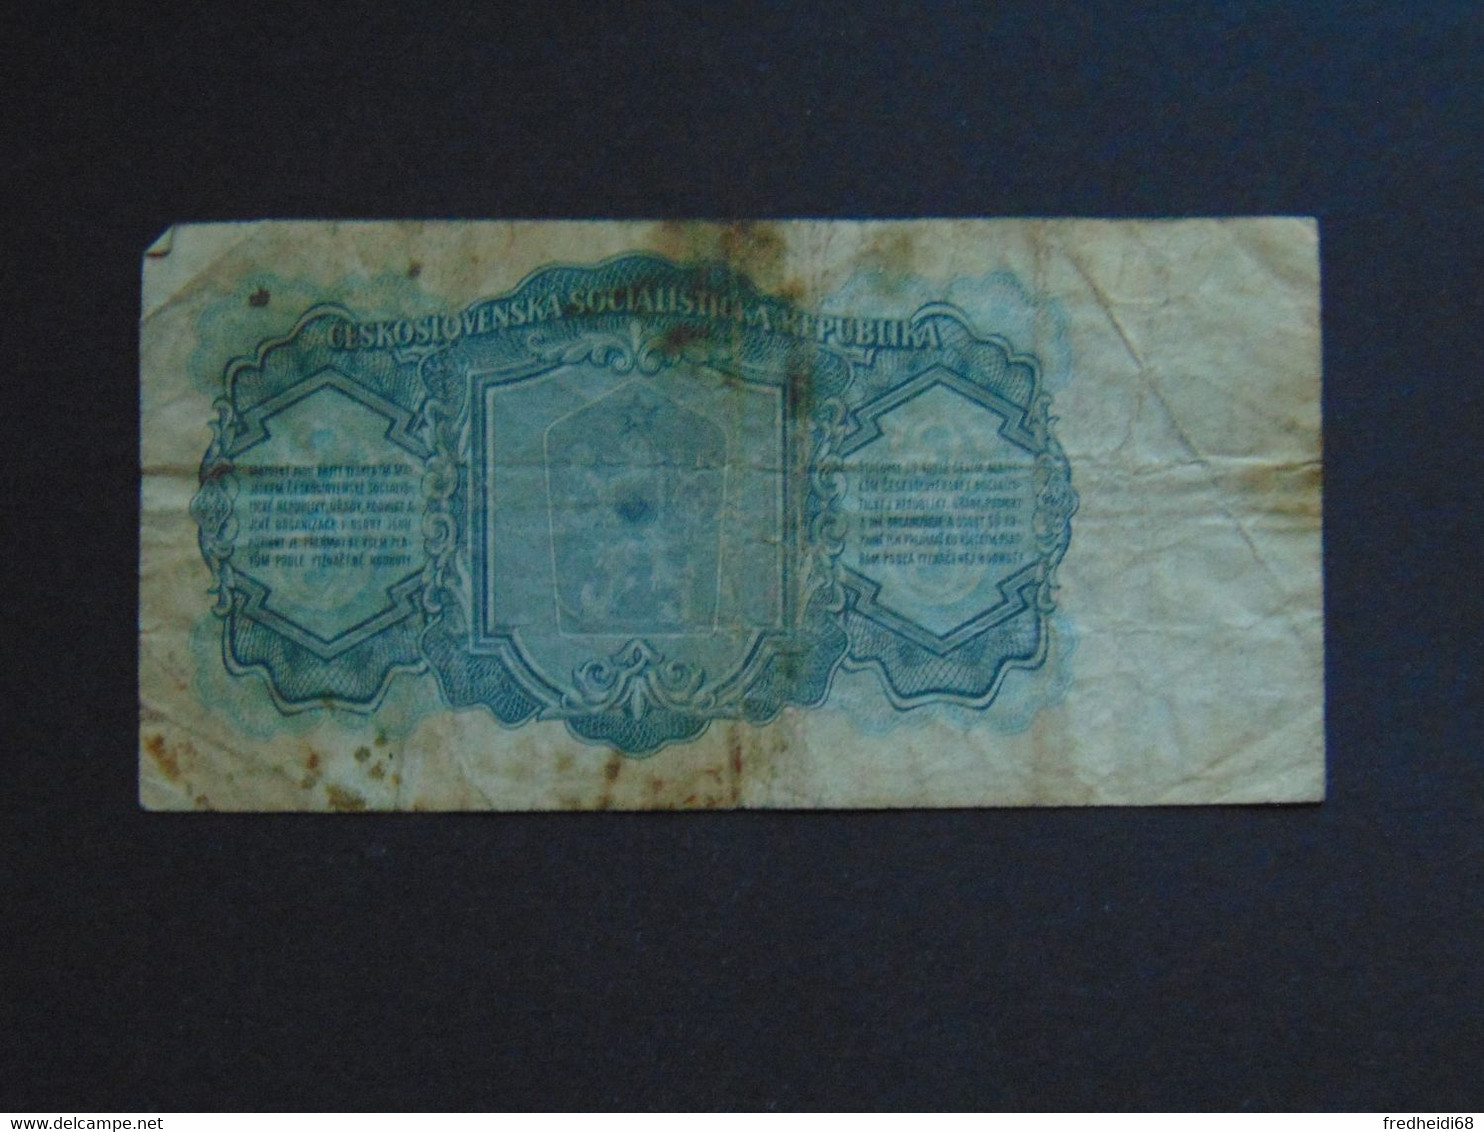 2 Billets Tchécoslovaquie De 1961 à 3 Korun - 2nd Choix - Czechoslovakia